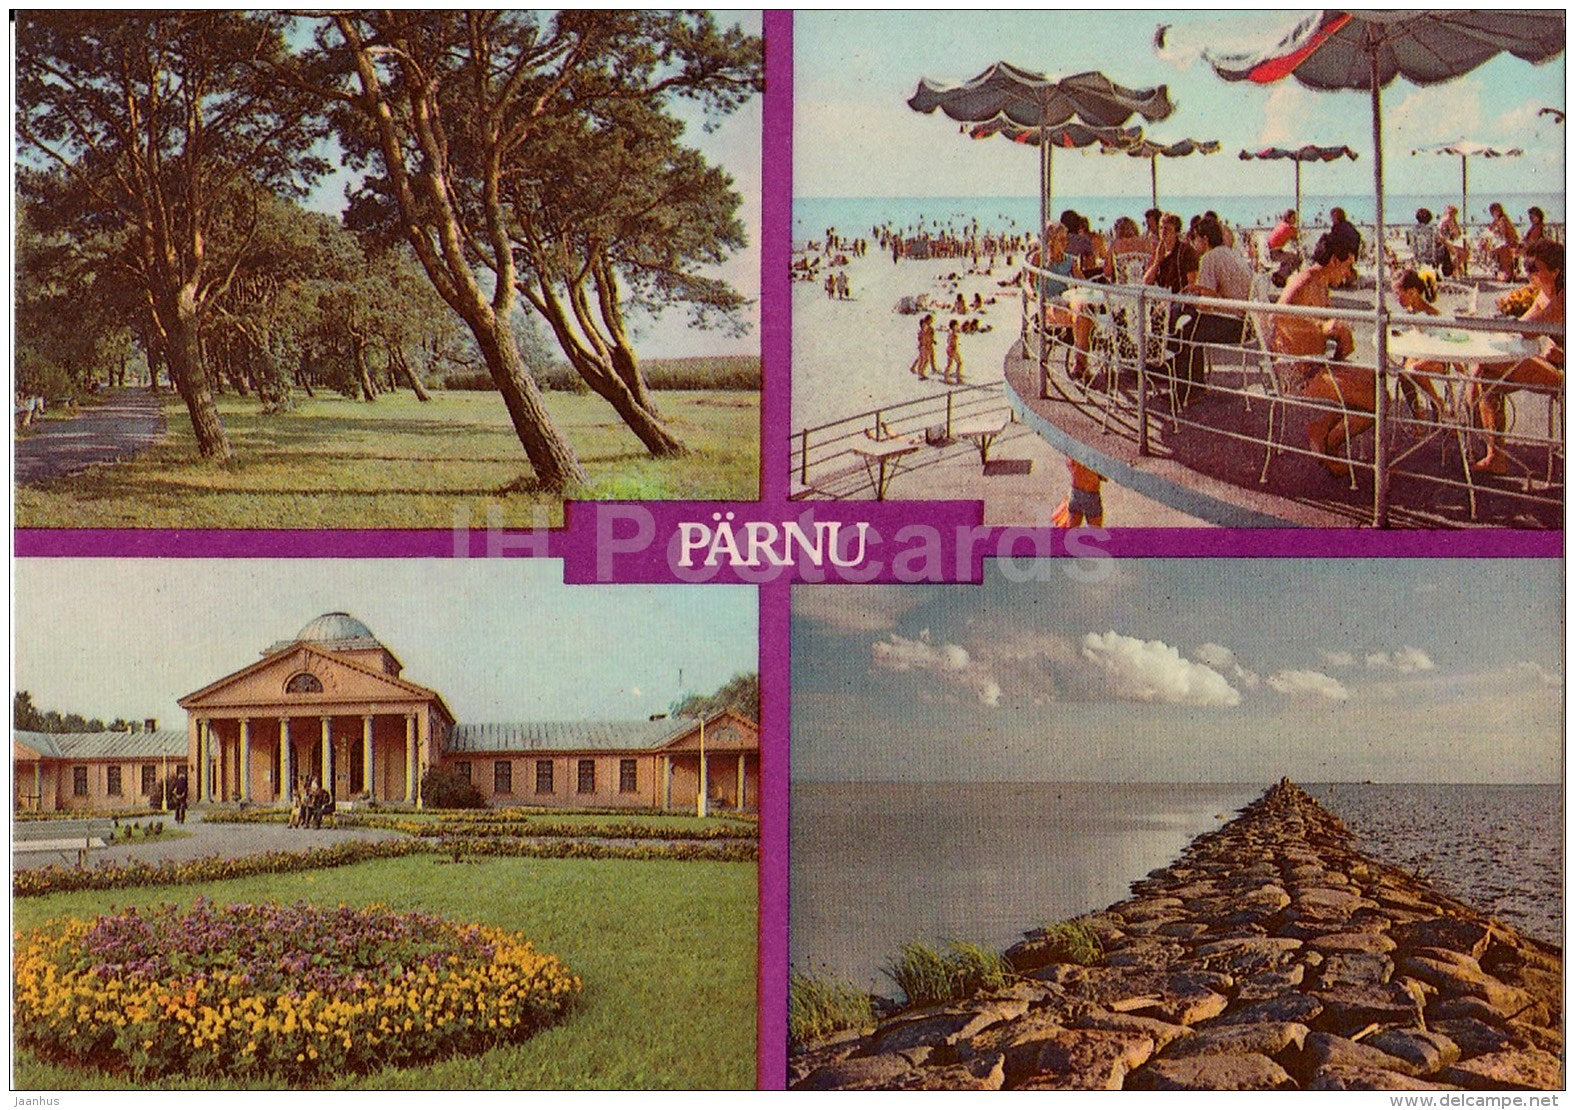 Beach Park - Mud Bath - Stone Breakwater - Pärnu - 1988 - Estonia USSR - unused - JH Postcards